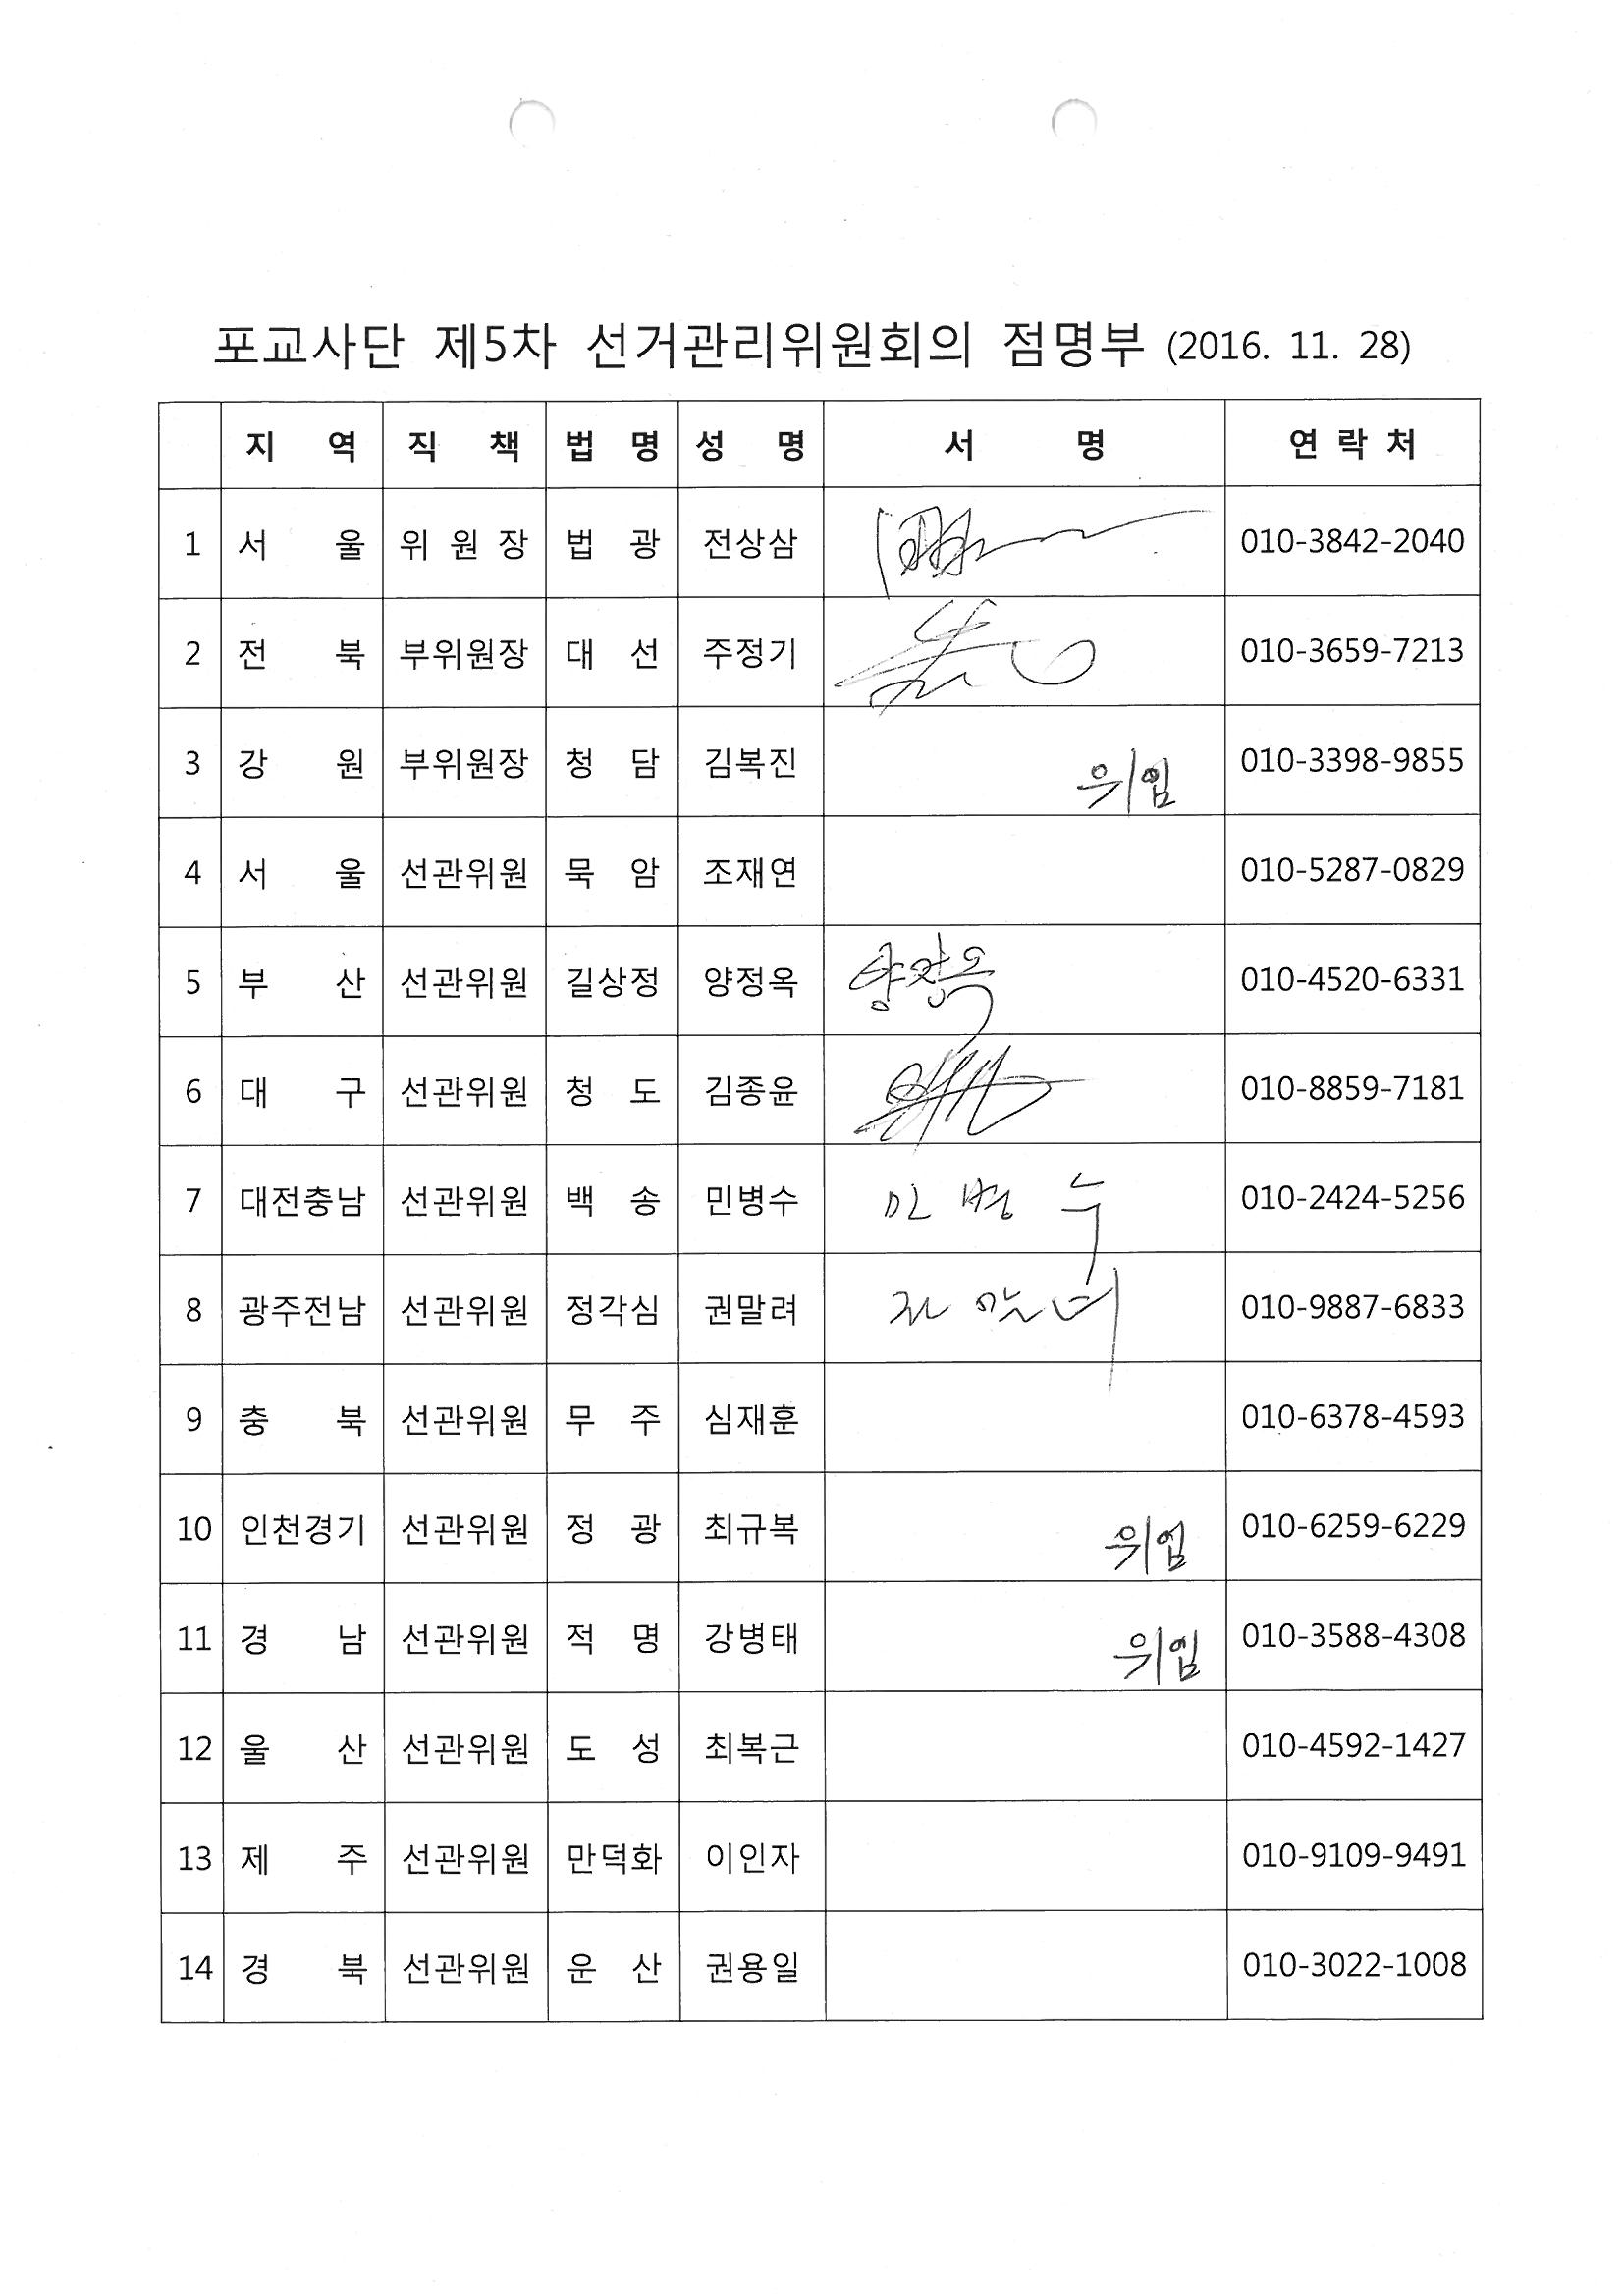 제5차 선거관리위원회의 점명부(11.28) 스캔.jpg